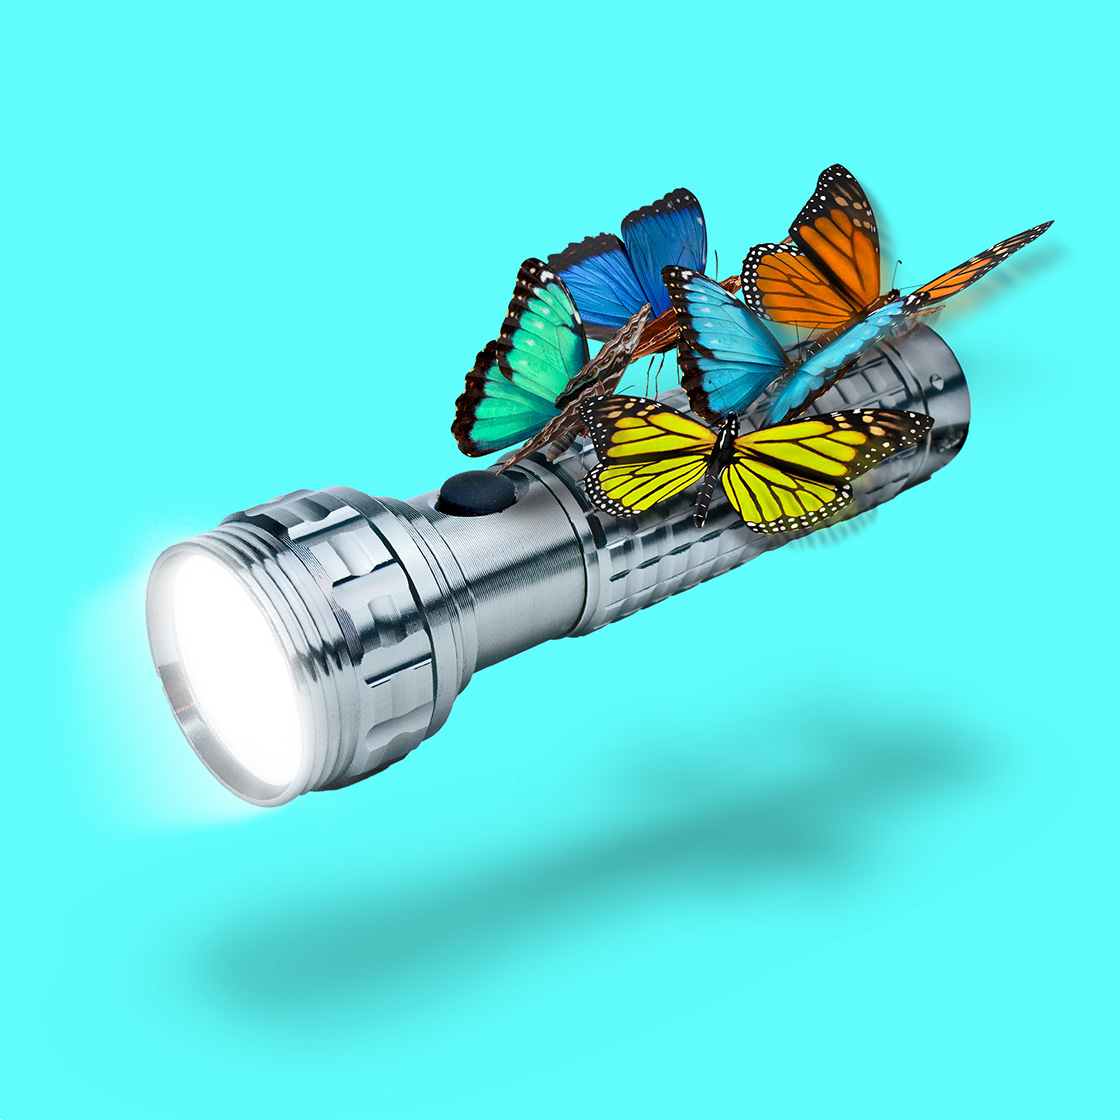 Ilustración de unas mariposas sosteniendo una linterna